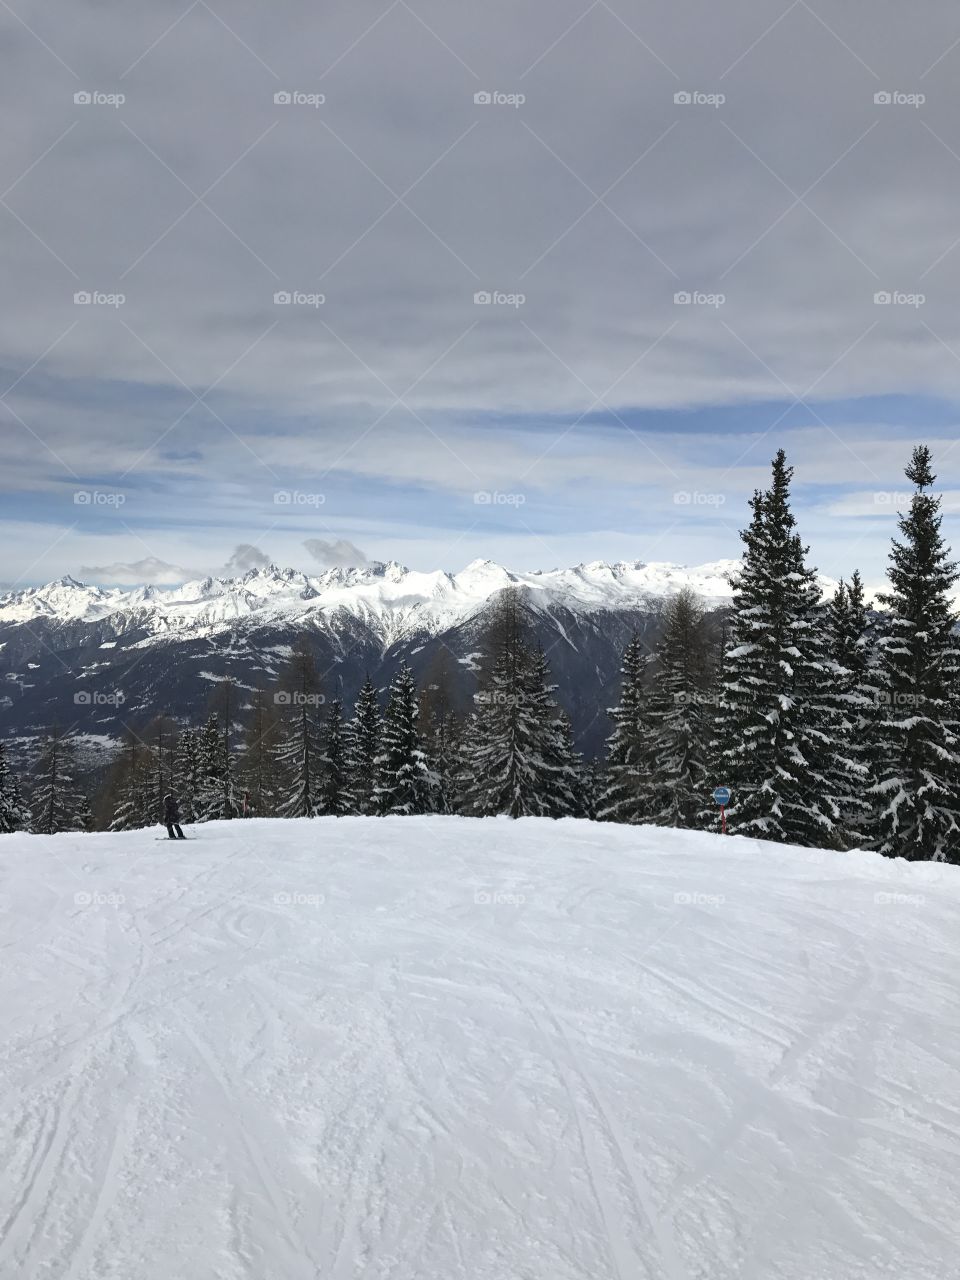 Italian ski slope